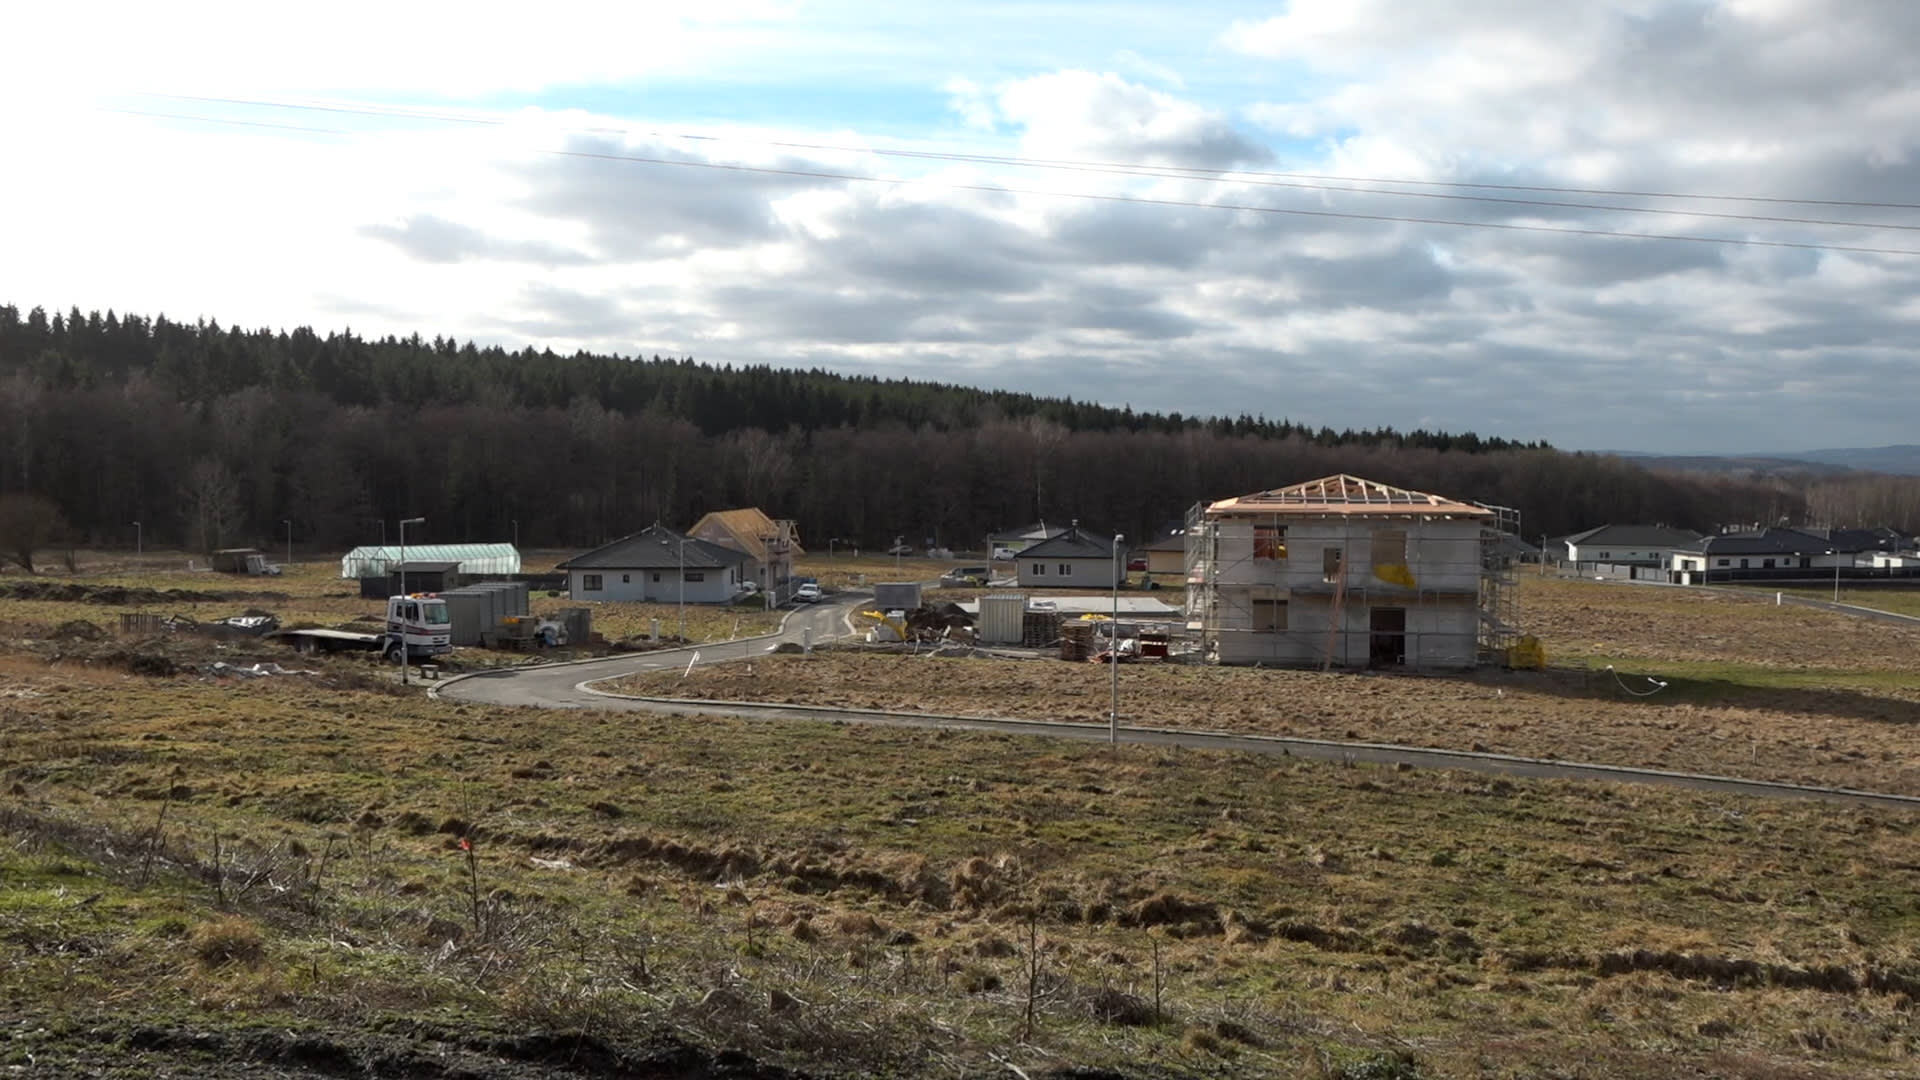 Desítkám rodin ve vesnici Hory na Karlovarsku hrozí vystěhování z nově postavených domků.